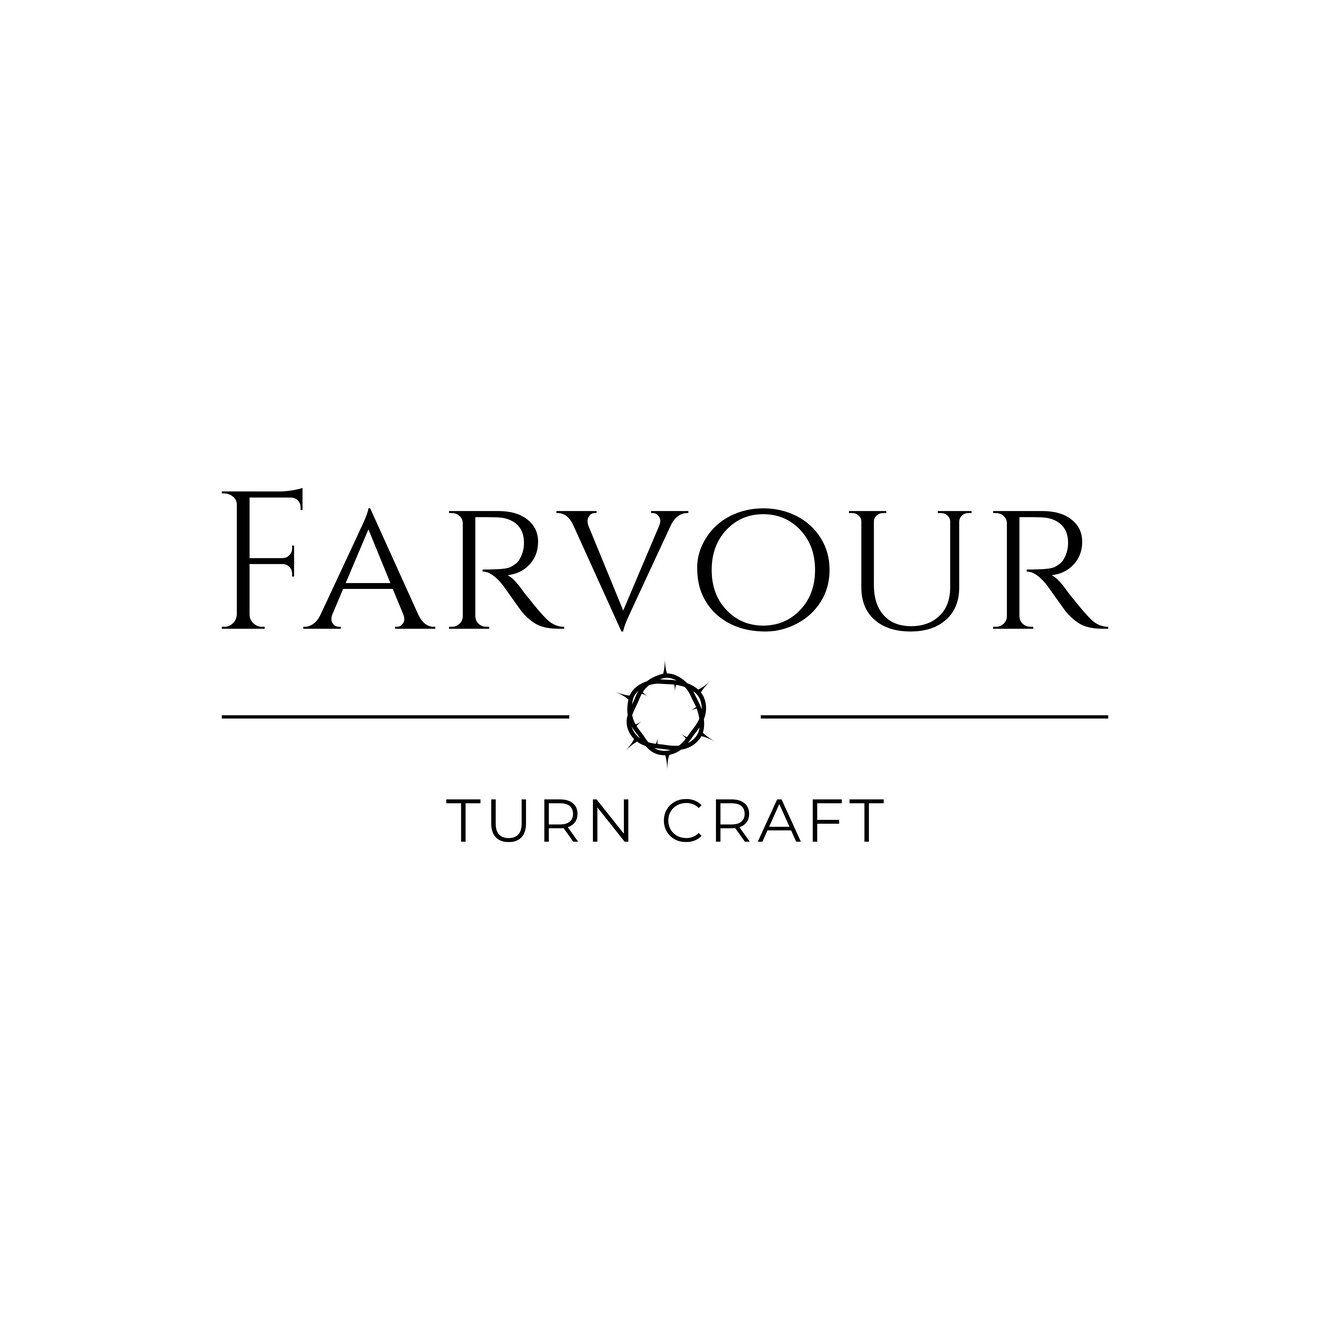 www.farvourturncraft.com